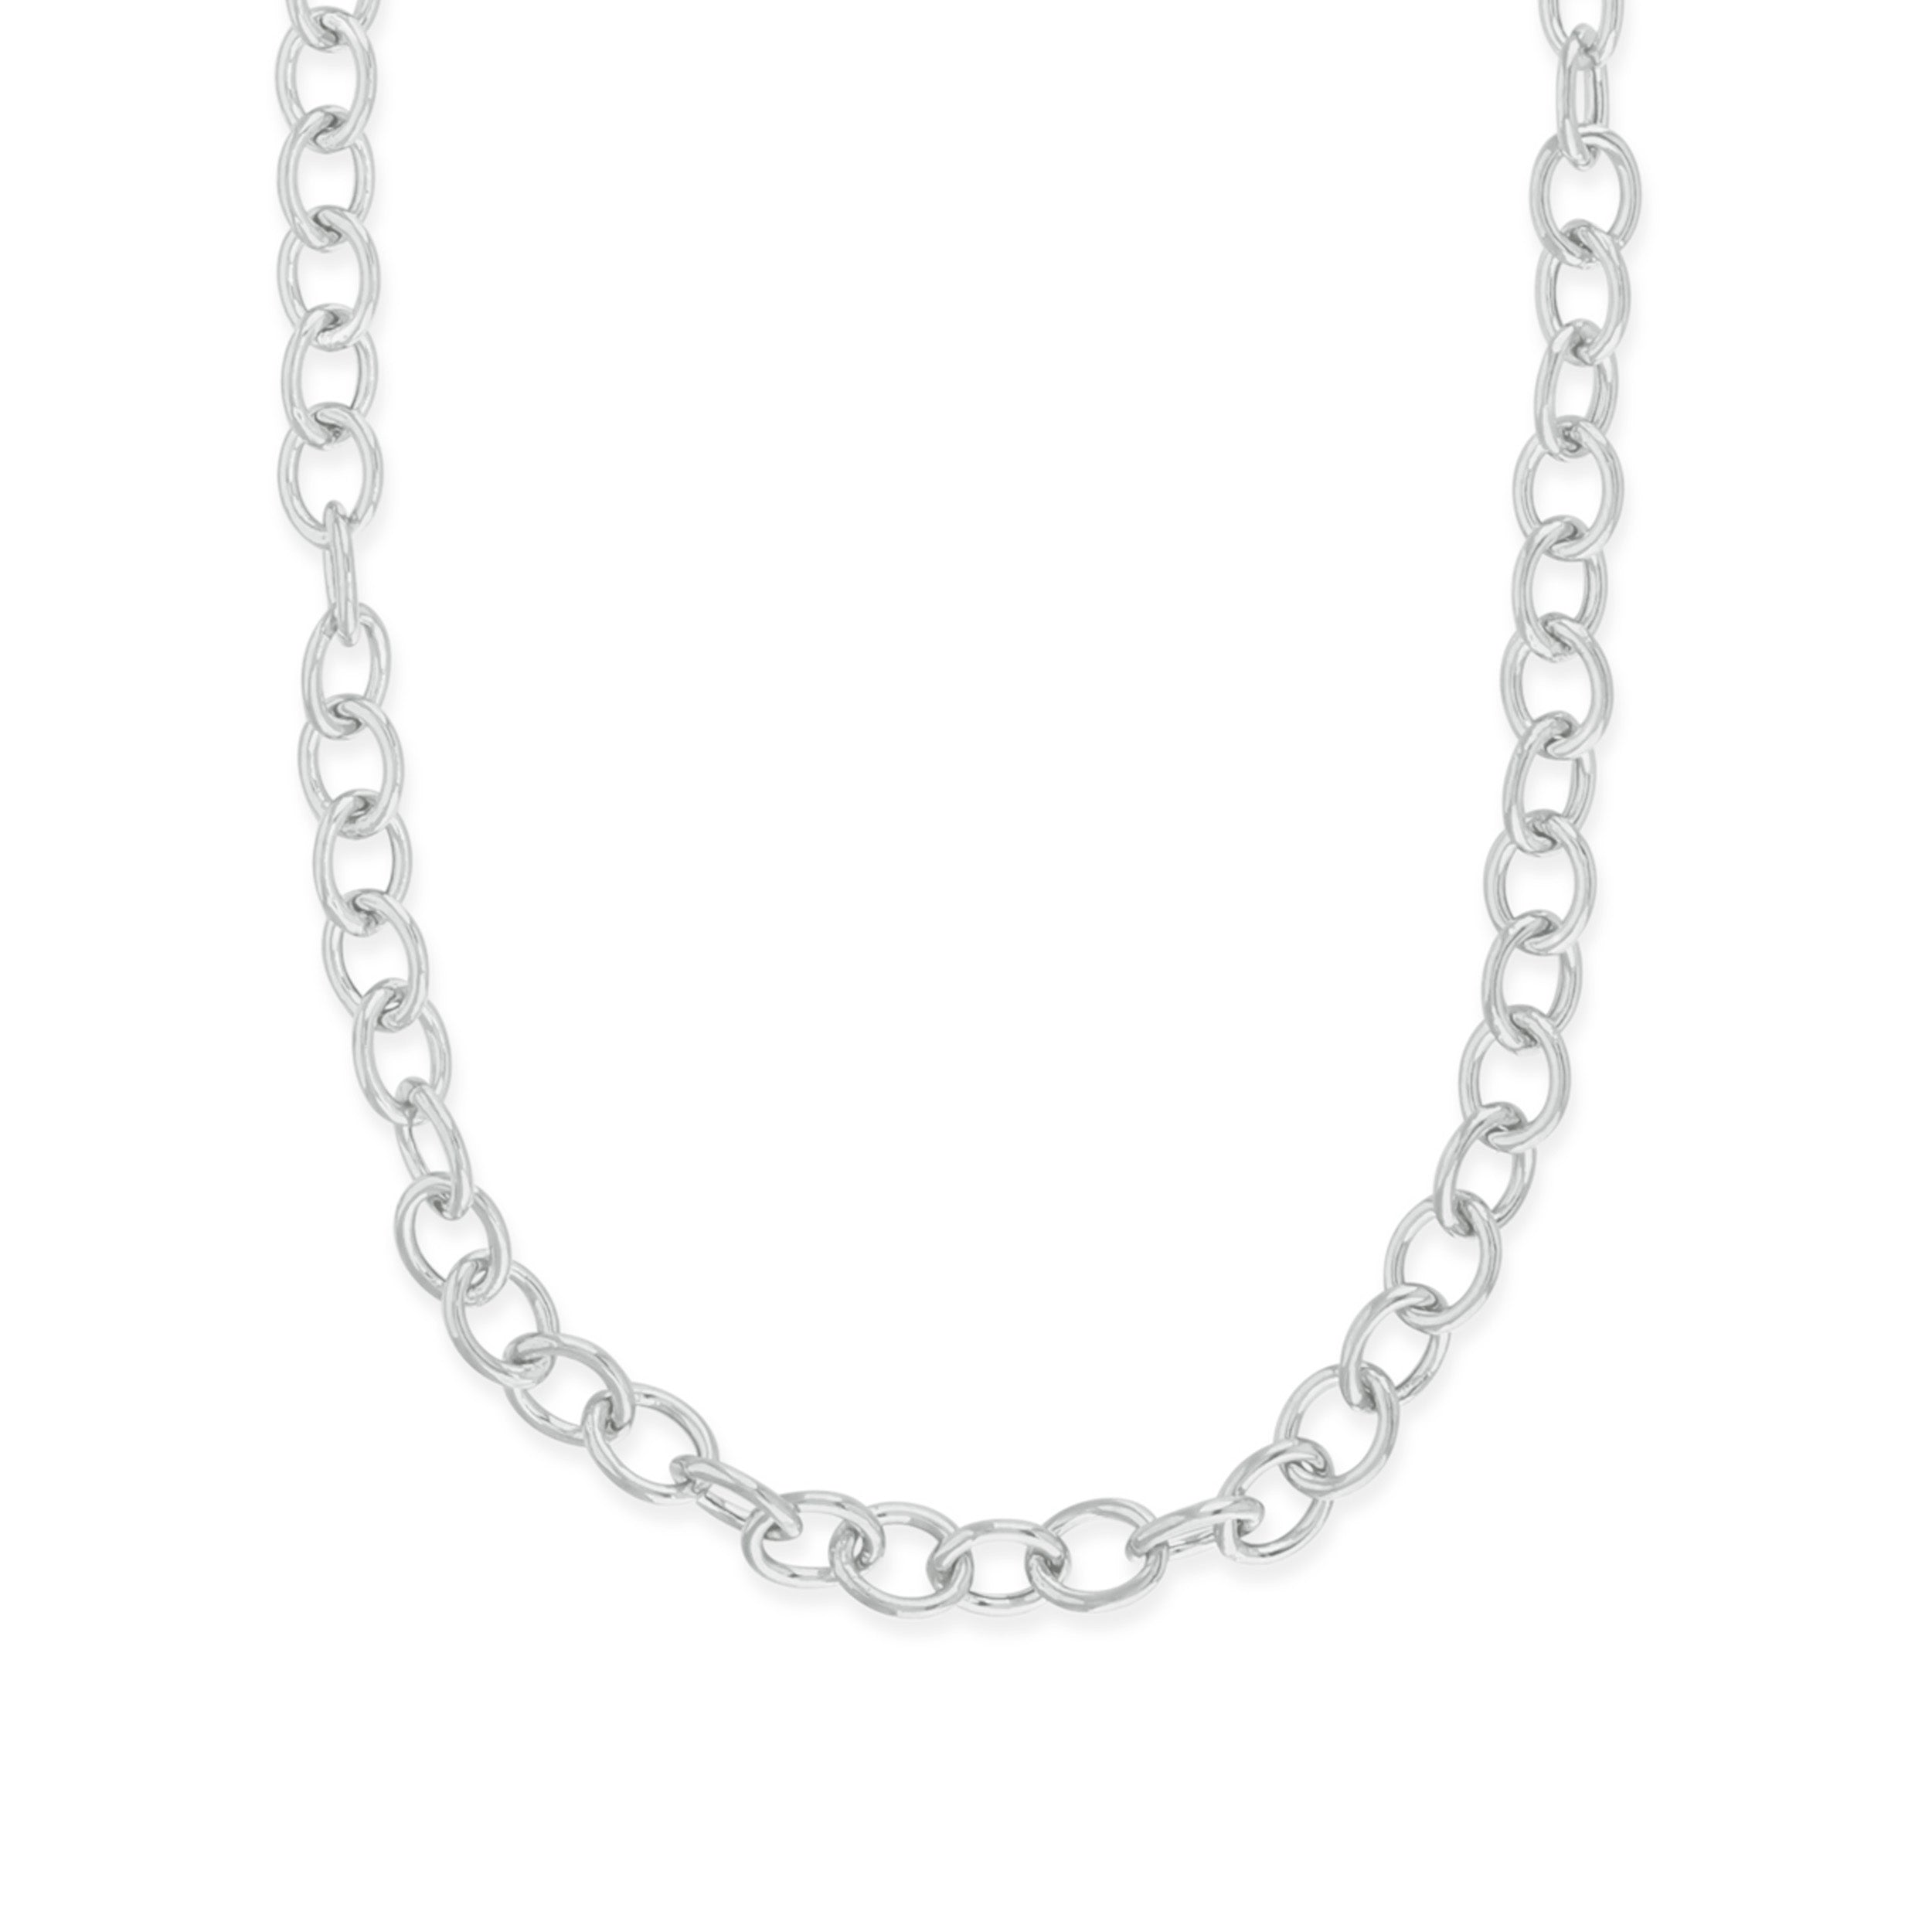 Silver Rachel Stevens Chain Necklace